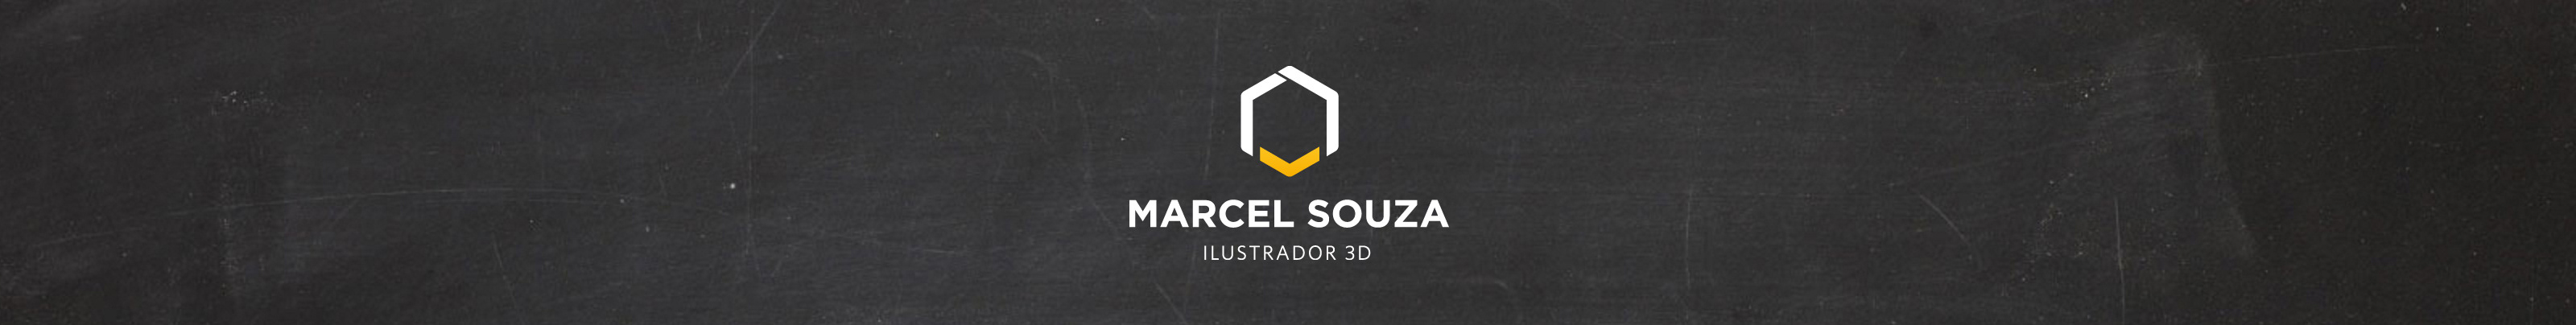 Banner de perfil de Marcel Souza